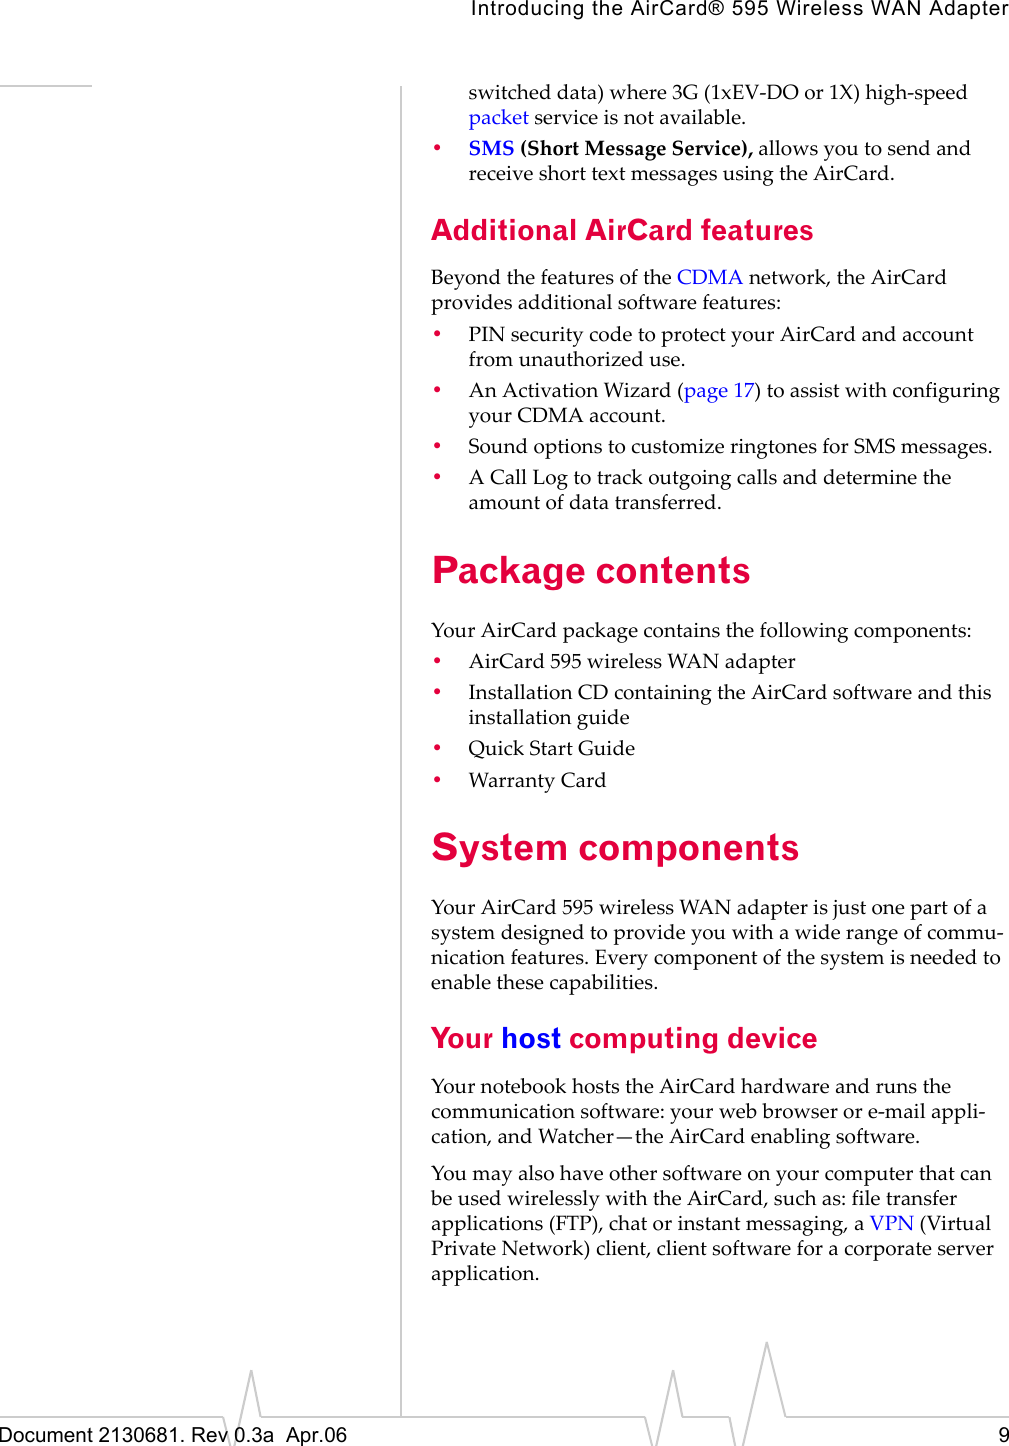 Introducing the AirCard® 595 Wireless WAN AdapterDocument 2130681. Rev 0.3a  Apr.06 9switchedȱdata)ȱwhereȱ3Gȱ(1xEVȬDOȱorȱ1X)ȱhighȬspeedȱpacketȱserviceȱisȱnotȱavailable.•SMS (ShortȱMessageȱService),ȱallowsȱyouȱtoȱsendȱandȱreceiveȱshortȱtextȱmessagesȱusingȱtheȱAirCard.Additional AirCard featuresBeyondȱtheȱfeaturesȱofȱtheȱCDMAȱnetwork,ȱtheȱAirCardȱprovidesȱadditionalȱsoftwareȱfeatures:•PINȱsecurityȱcodeȱtoȱprotectȱyourȱAirCardȱandȱaccountȱfromȱunauthorizedȱuse.•AnȱActivationȱWizardȱ(page 17)ȱtoȱassistȱwithȱconfiguringȱyourȱCDMAȱaccount.•SoundȱoptionsȱtoȱcustomizeȱringtonesȱforȱSMSȱmessages.•AȱCallȱLogȱtoȱtrackȱoutgoingȱcallsȱandȱdetermineȱtheȱamountȱofȱdataȱtransferred.Package contentsYourȱAirCardȱpackageȱcontainsȱtheȱfollowingȱcomponents:•AirCard 595ȱwirelessȱWANȱadapter•InstallationȱCDȱcontainingȱtheȱAirCardȱsoftwareȱandȱthisȱinstallationȱguide•QuickȱStartȱGuide•WarrantyȱCardSystem componentsYourȱAirCard 595ȱwirelessȱWANȱadapterȱisȱjustȱoneȱpartȱofȱaȱsystemȱdesignedȱtoȱprovideȱyouȱwithȱaȱwideȱrangeȱofȱcommuȬnicationȱfeatures.ȱEveryȱcomponentȱofȱtheȱsystemȱisȱneededȱtoȱenableȱtheseȱcapabilities.Your host computing deviceYourȱnotebookȱhostsȱtheȱAirCardȱhardwareȱandȱrunsȱtheȱcommunicationȱsoftware:ȱyourȱwebȱbrowserȱorȱeȬmailȱappliȬcation,ȱandȱWatcher—theȱAirCardȱenablingȱsoftware.YouȱmayȱalsoȱhaveȱotherȱsoftwareȱonȱyourȱcomputerȱthatȱcanȱbeȱusedȱwirelesslyȱwithȱtheȱAirCard,ȱsuchȱas:ȱfileȱtransferȱapplicationsȱ(FTP),ȱchatȱorȱinstantȱmessaging,ȱaȱVPN (VirtualȱPrivateȱNetwork)ȱclient,ȱclientȱsoftwareȱforȱaȱcorporateȱserverȱapplication.